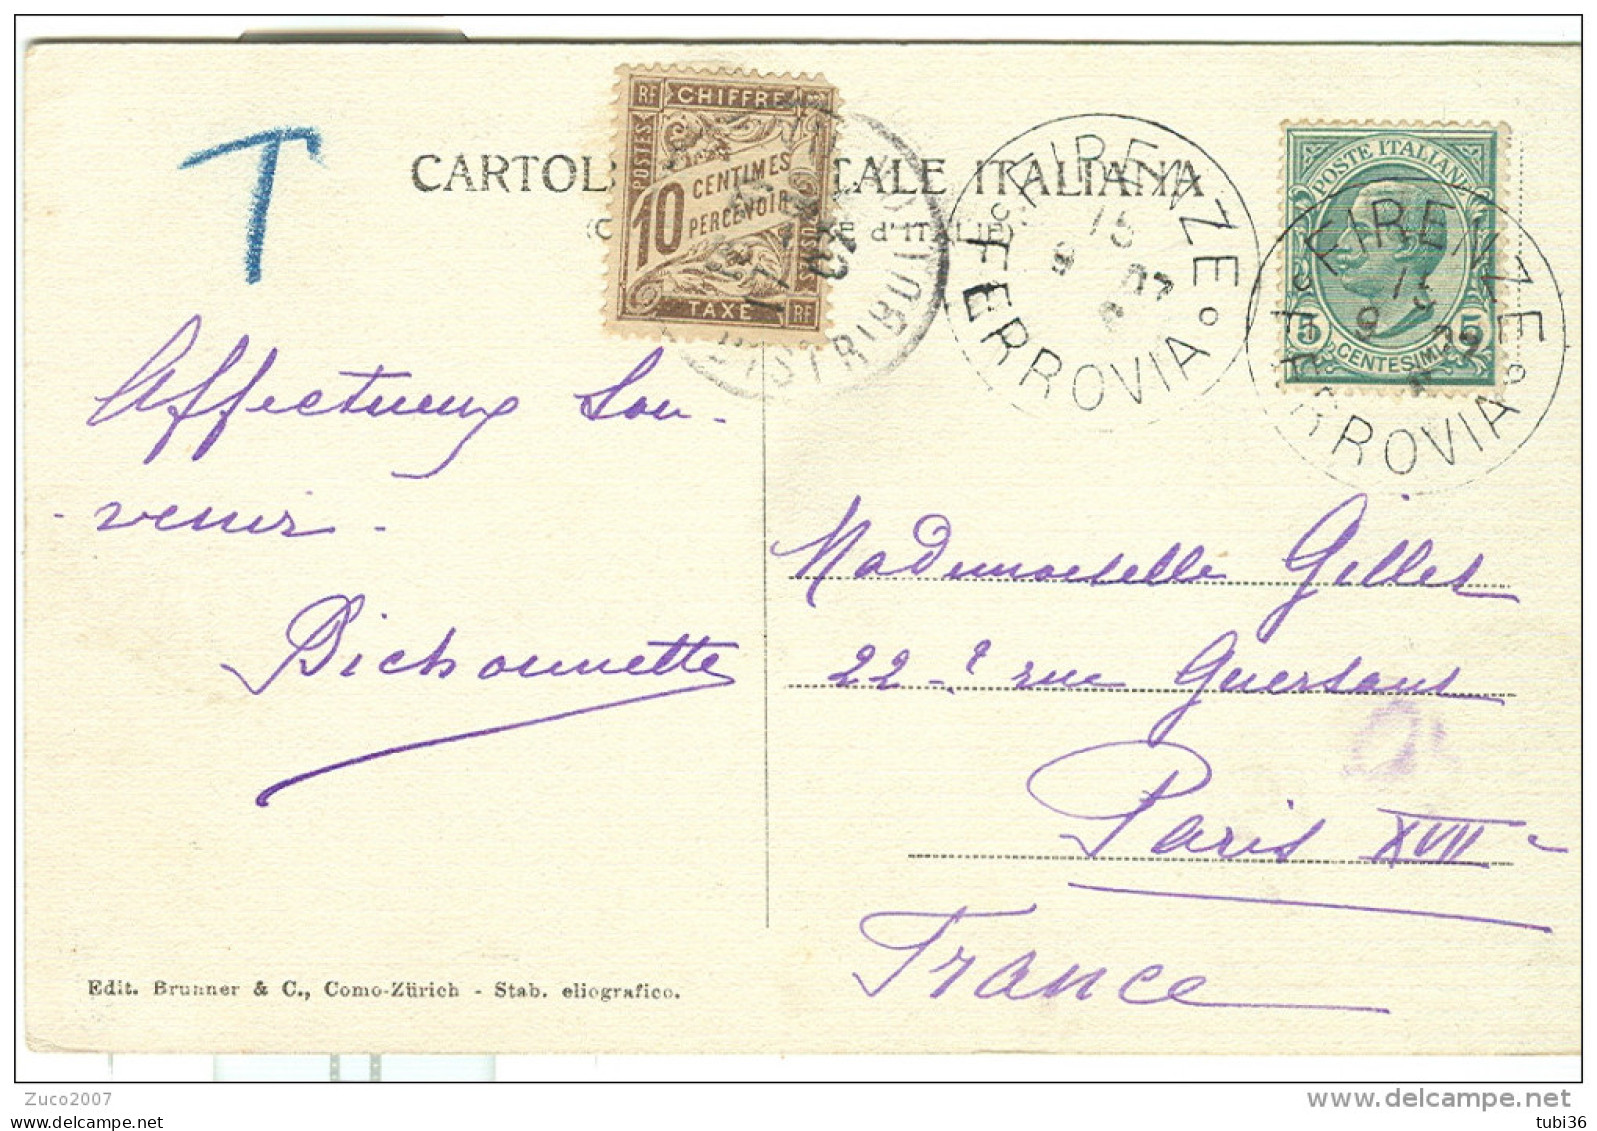 LEONI Cent.5 SU CARTOLINA B/N VIAGGIATA  1907, FIRENZE-PARIGI, TASSATA FRANCIA Cent.10,FIRENZE BATTISTERO - Segnatasse